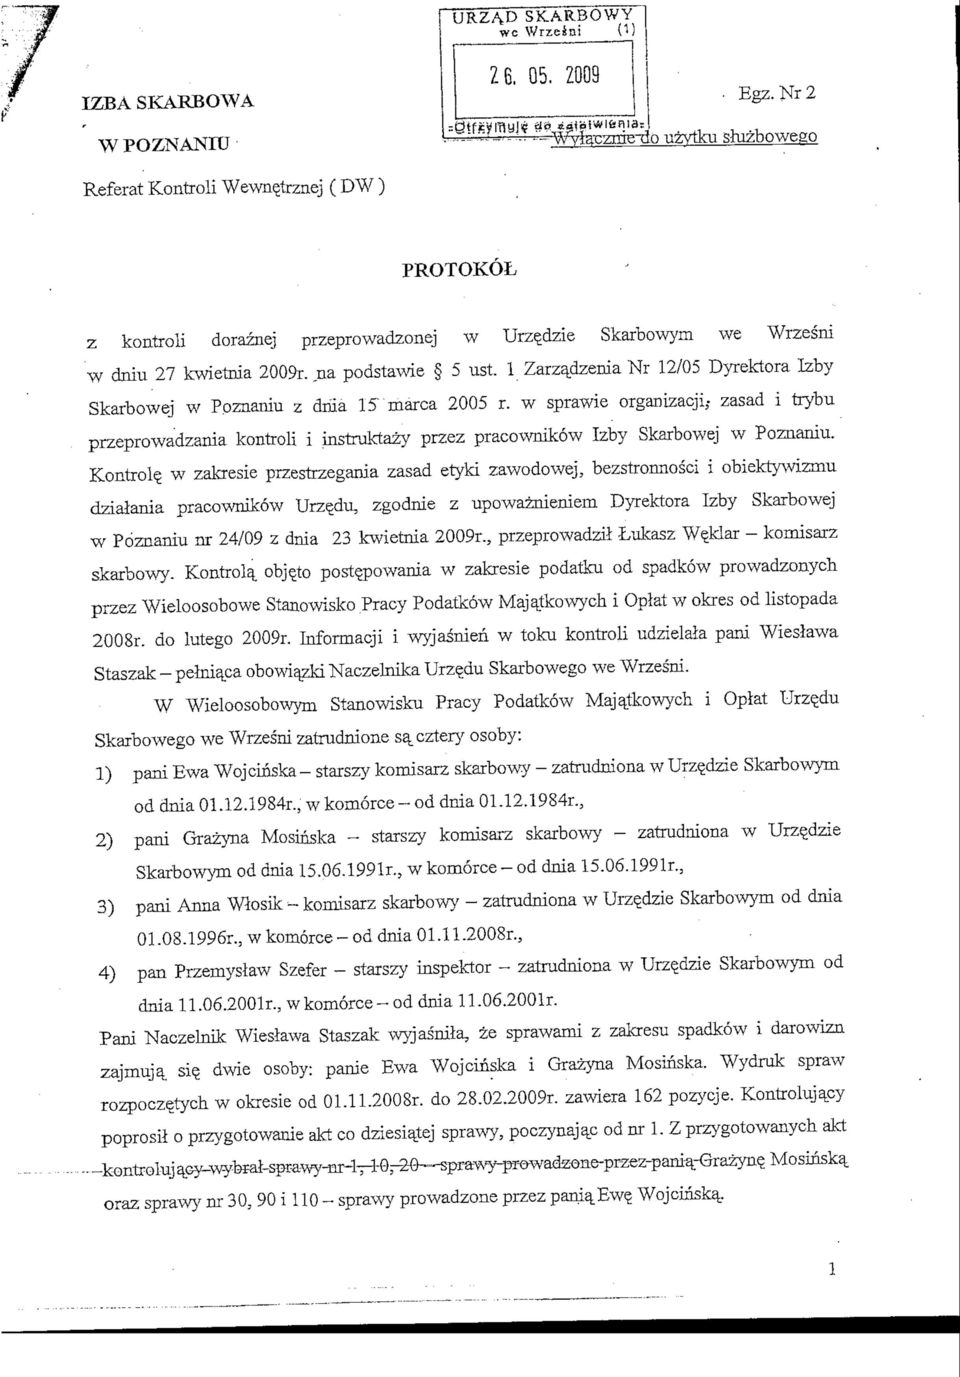 1 Zarzajizenia Nr 12/05 Dyrektora Izby Skarbowej w Ppznaniu z dma 15' marca 2005 r.